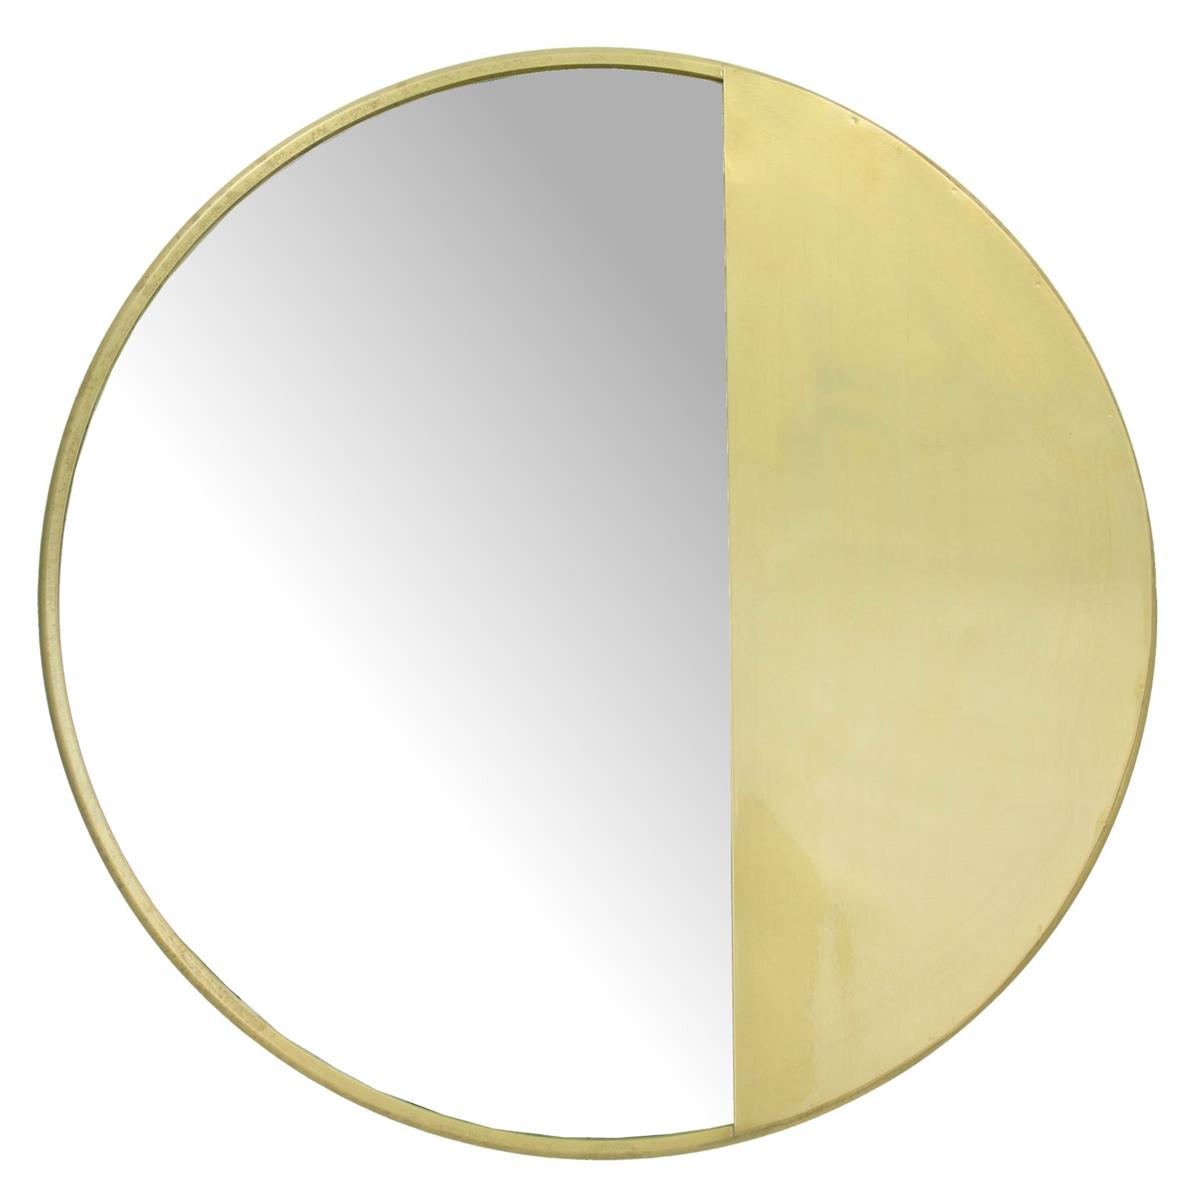 ArteLibre Καθρέπτης Τοίχου Μεταλλικός Χρυσός 05151953